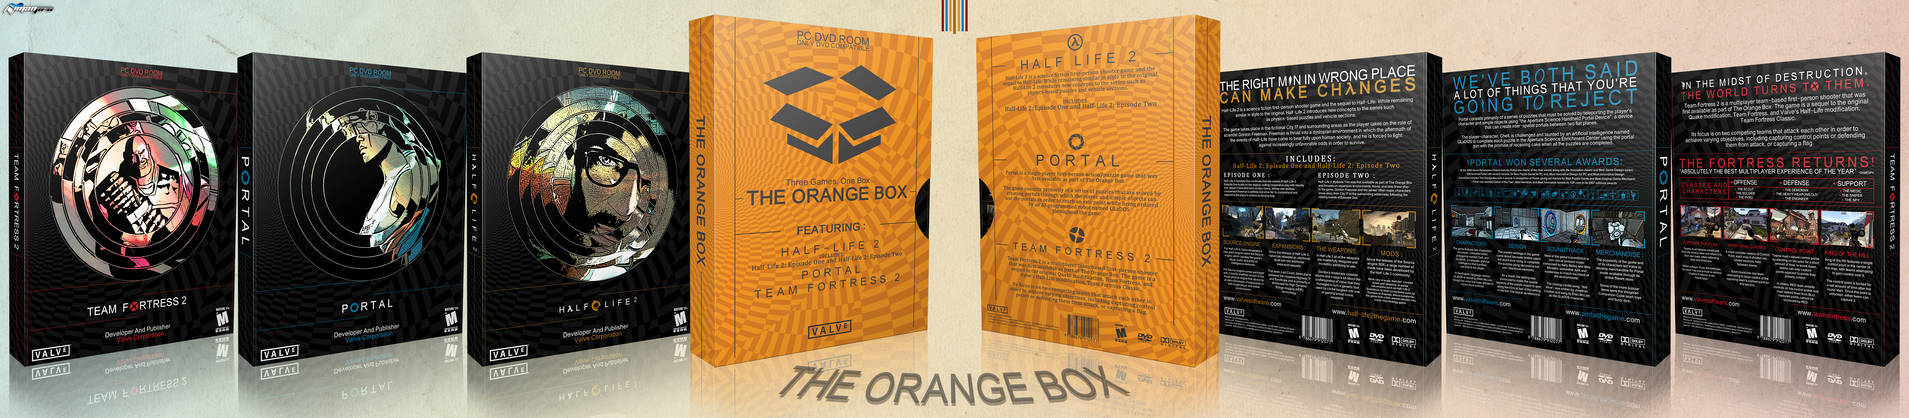 The Orange Box boxart cover